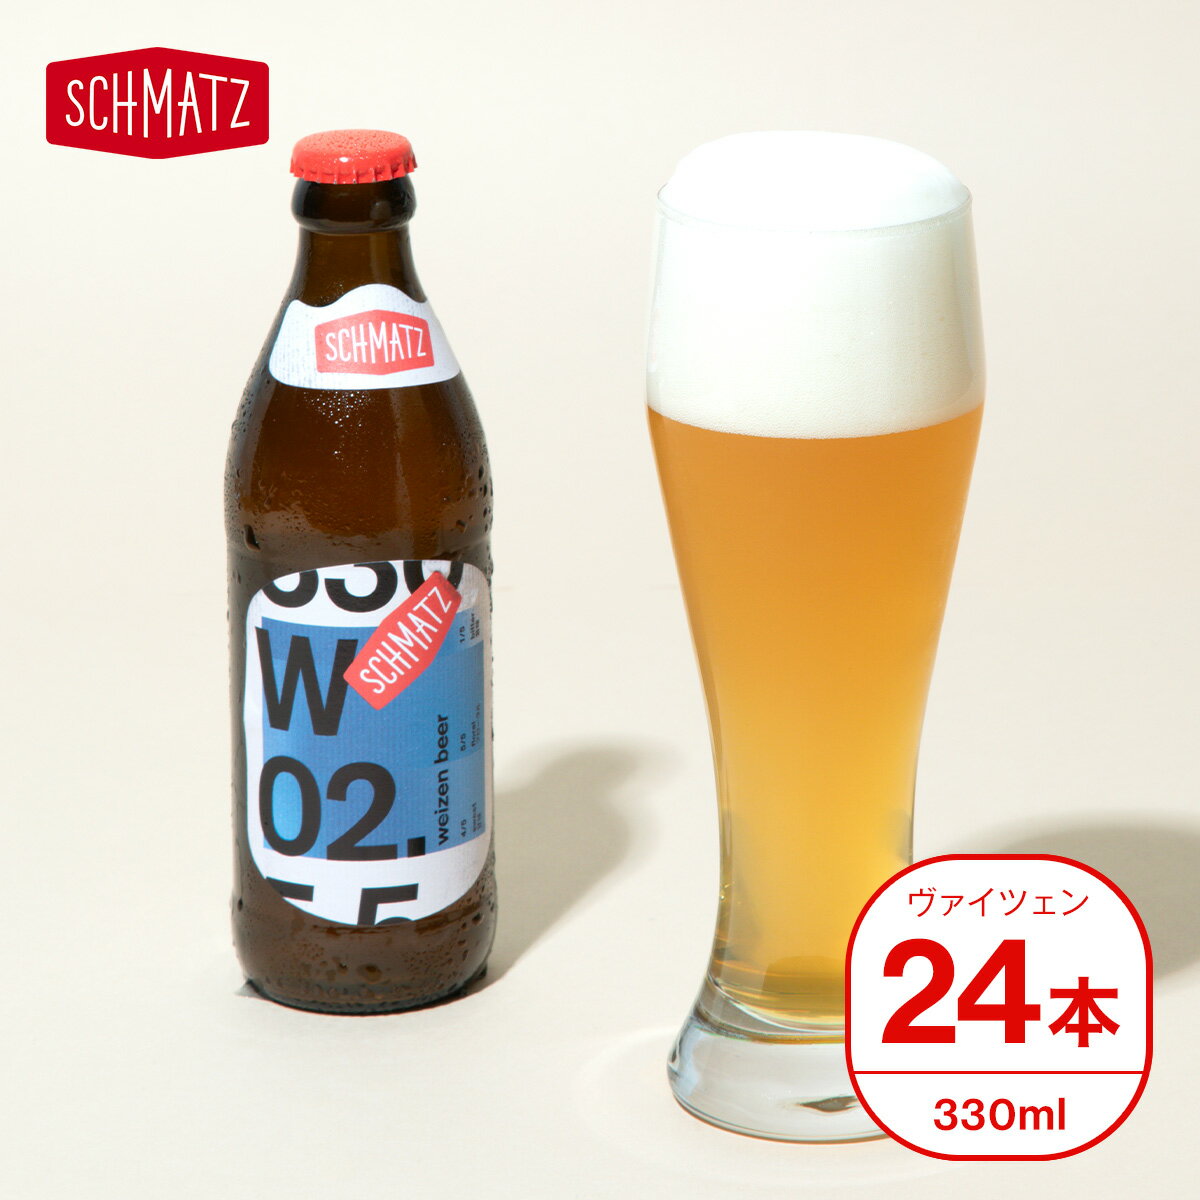 ヴァイツェン ドイツ クラフトビール ギフト 送料無料 シュマッツ ドイツビール 白ビール ビール ギフト セット 24本…